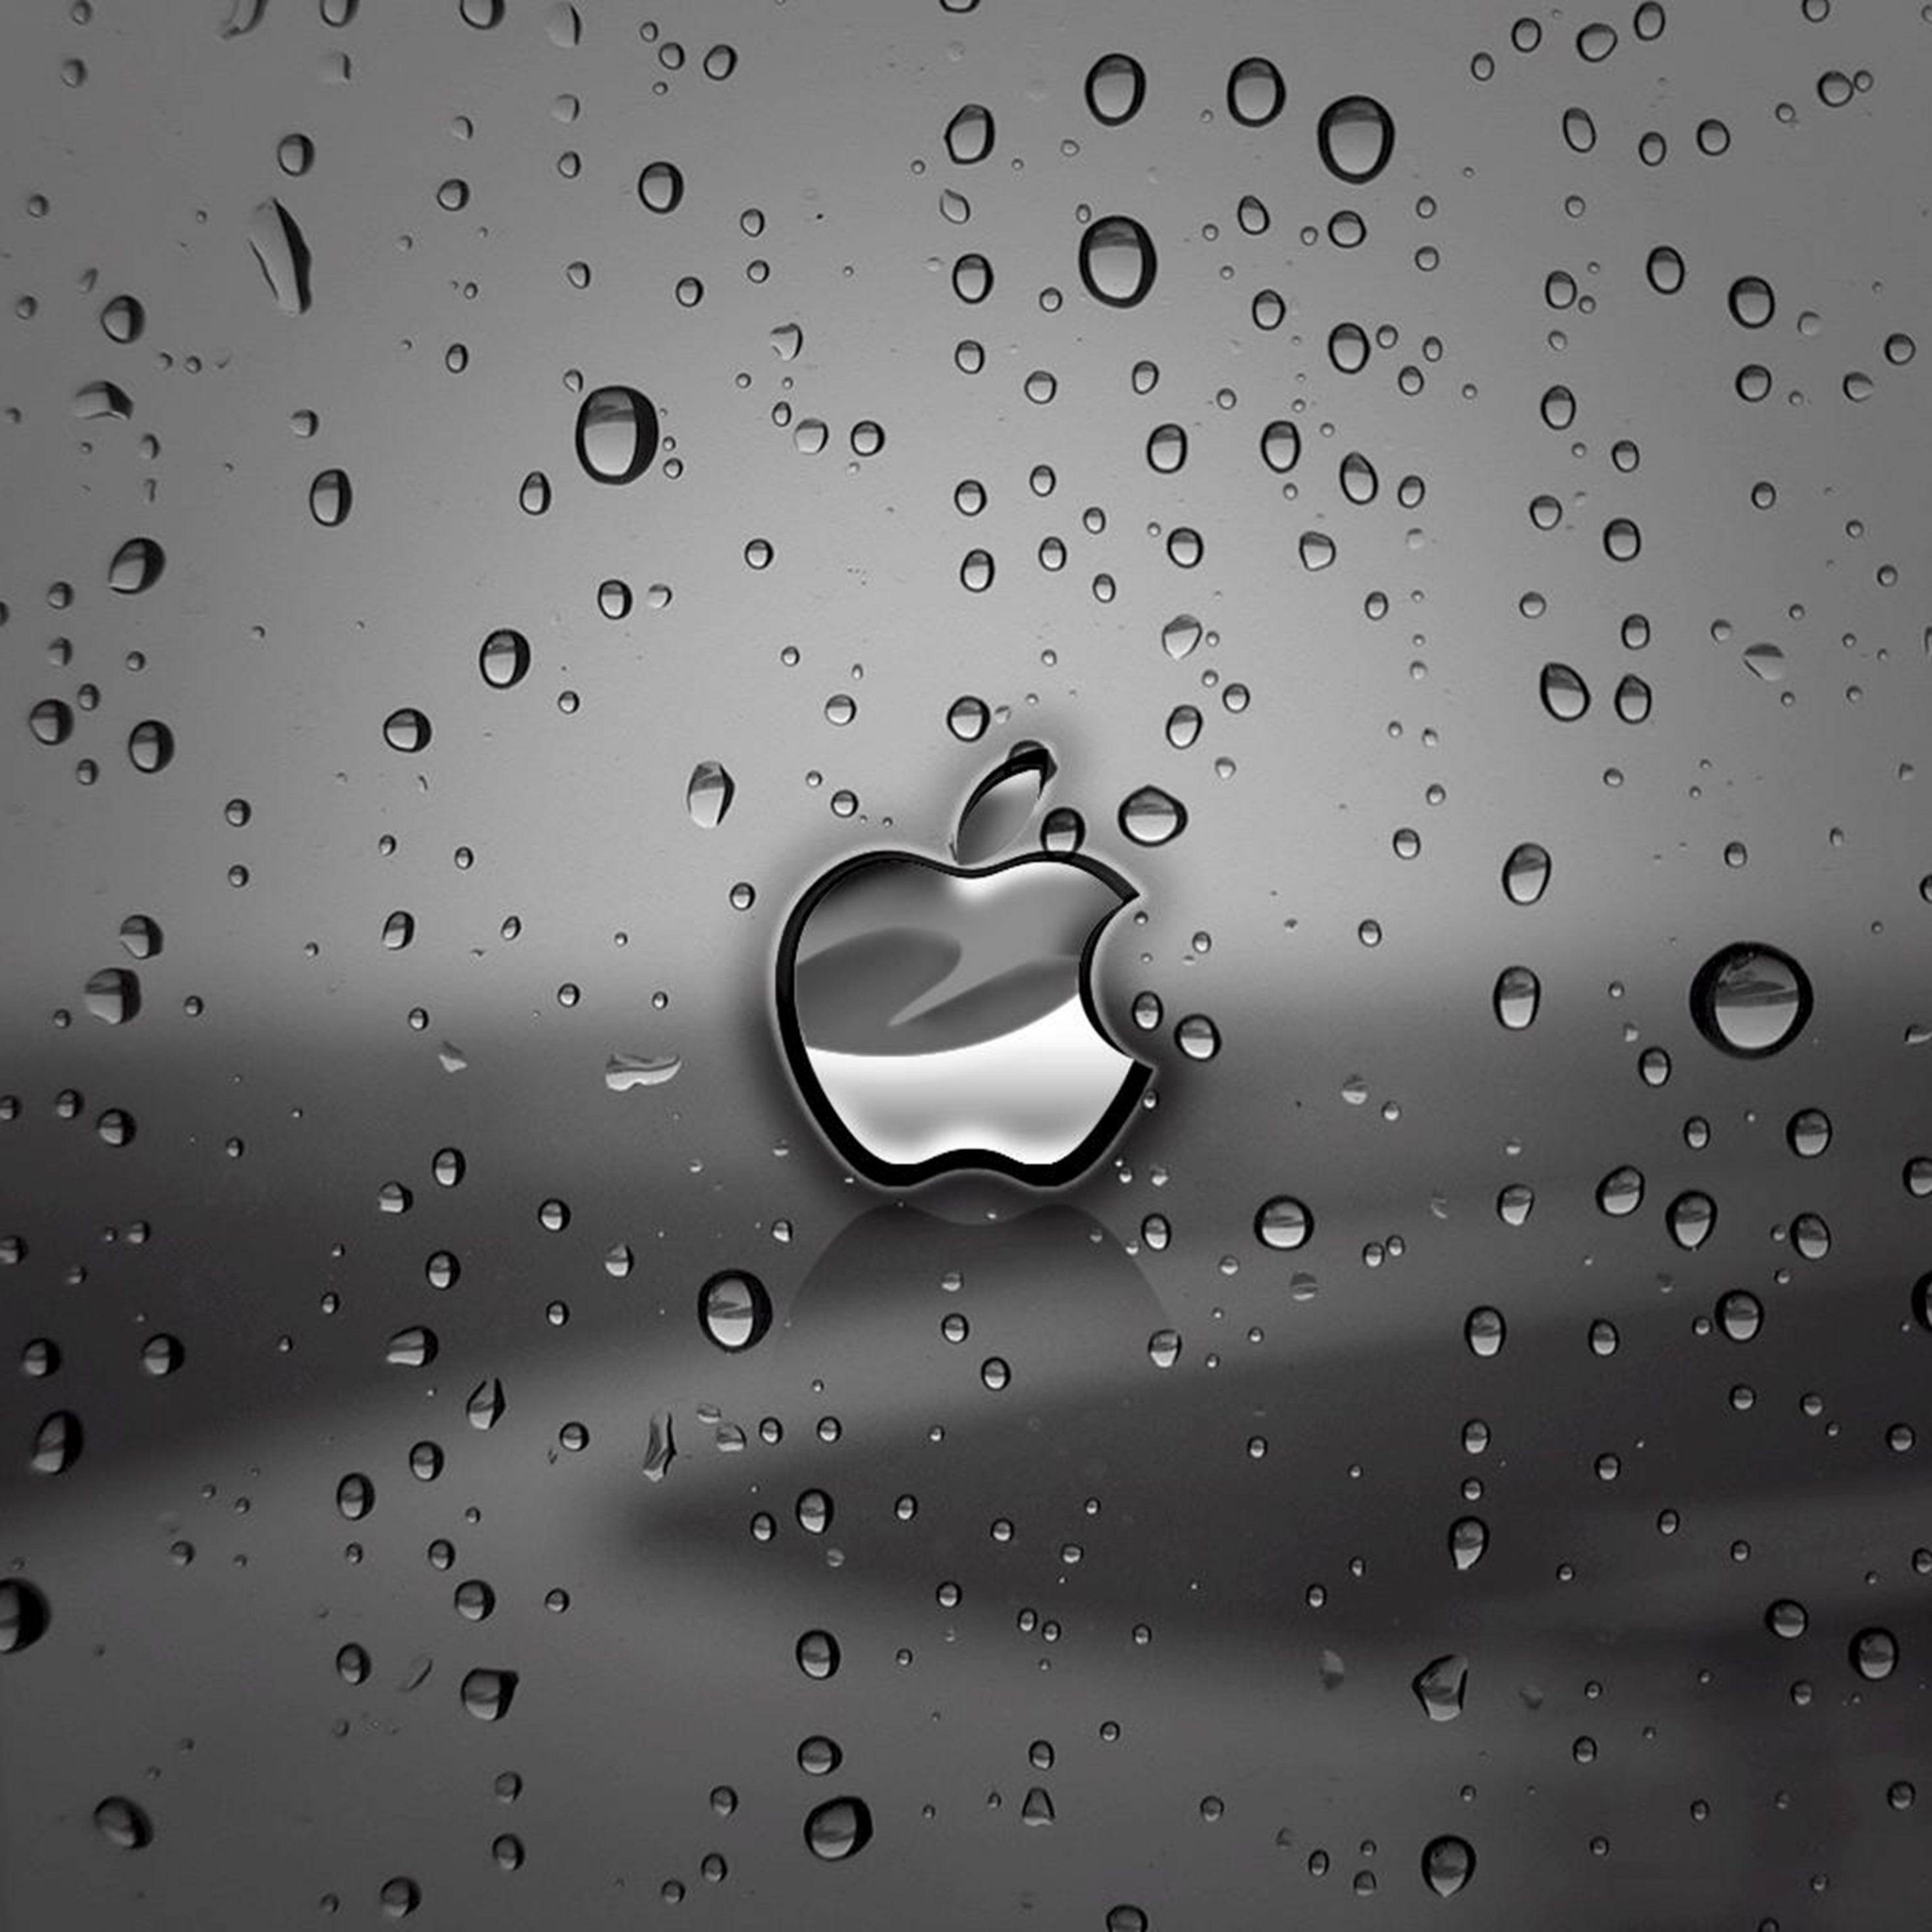 2934x2934 iOS iPad wallpaper 4k Apple Rain Ipad Wallpaper 2934x2934 pixels resolution